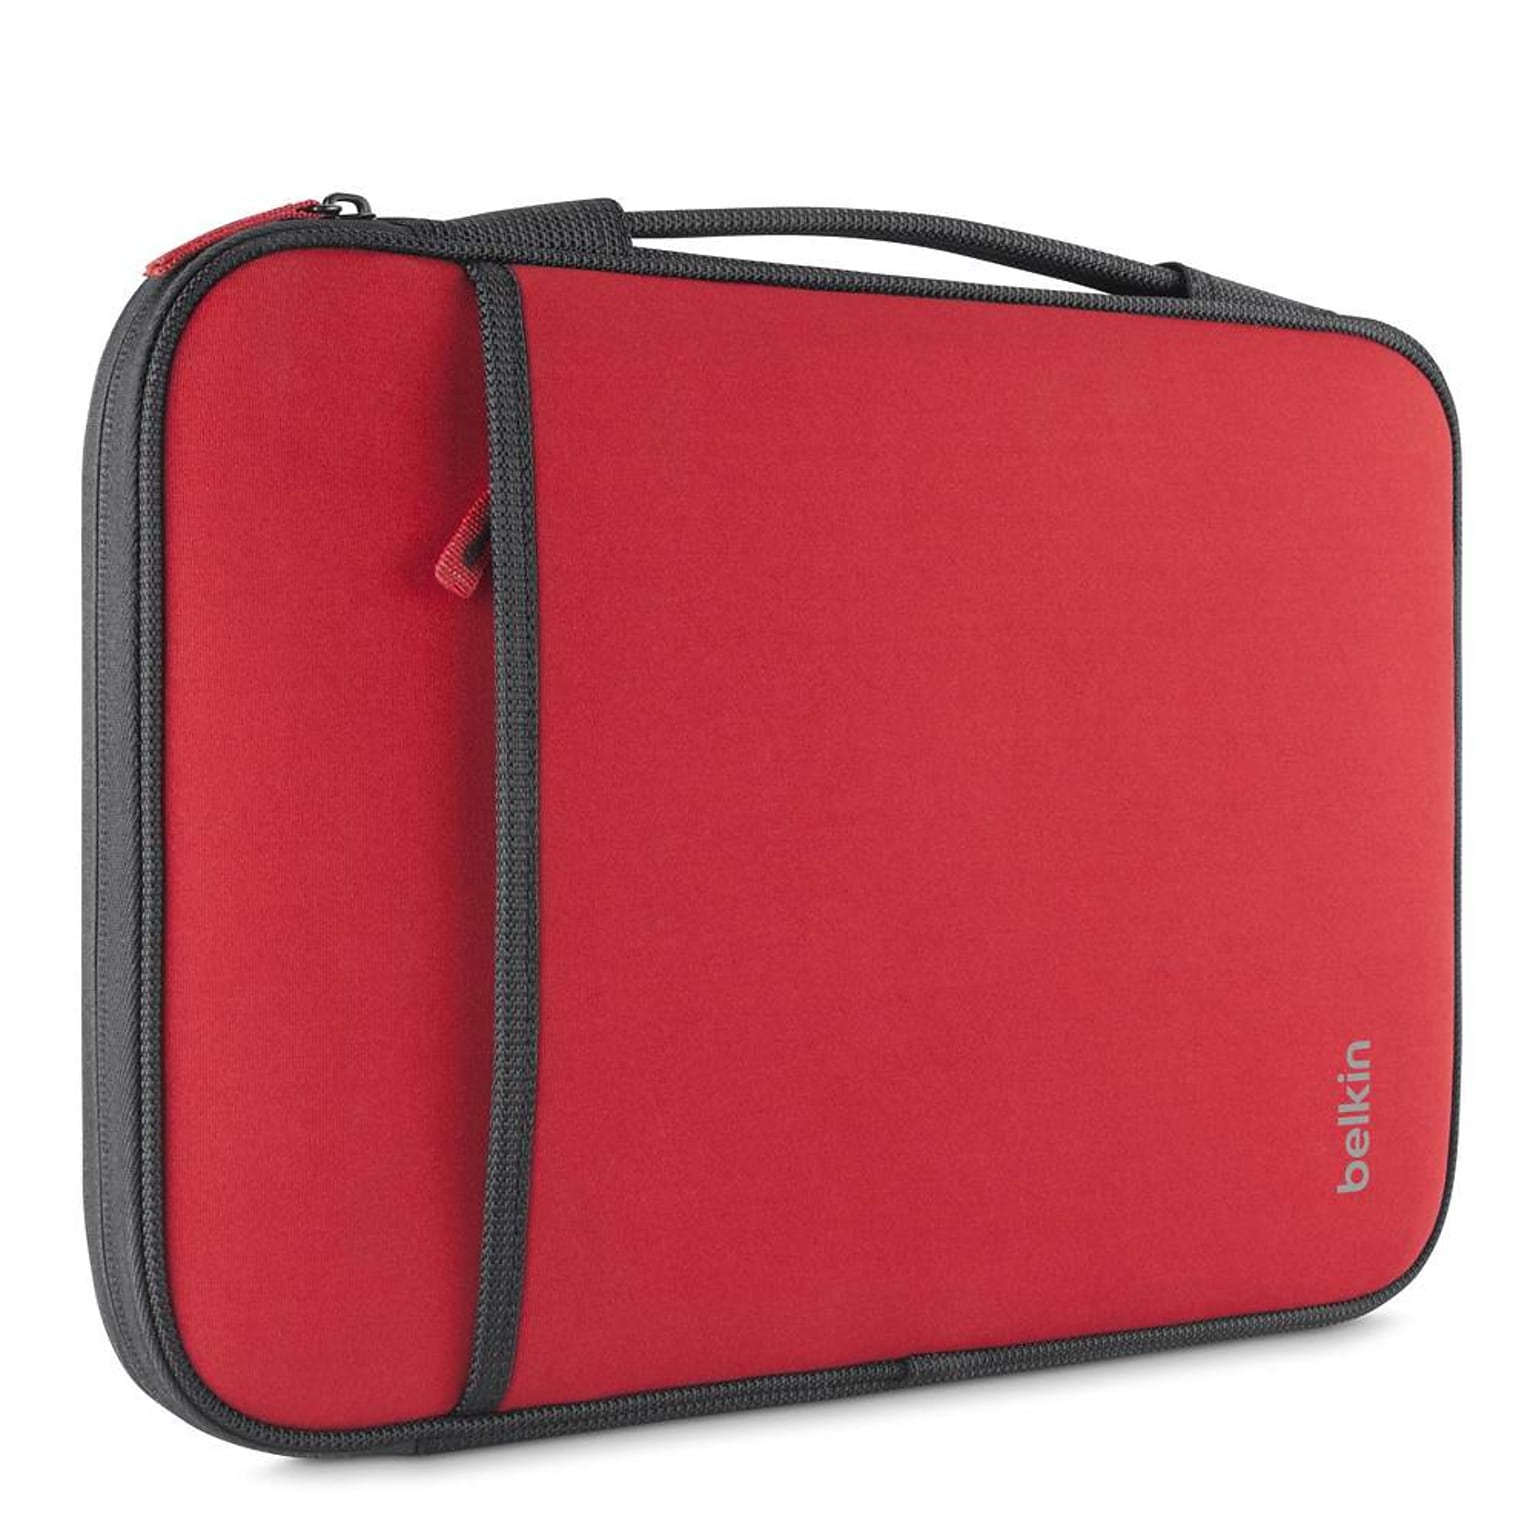 Belkin Neoprene Laptop Sleeve for 11 Laptops, Red (B2B081-C02)